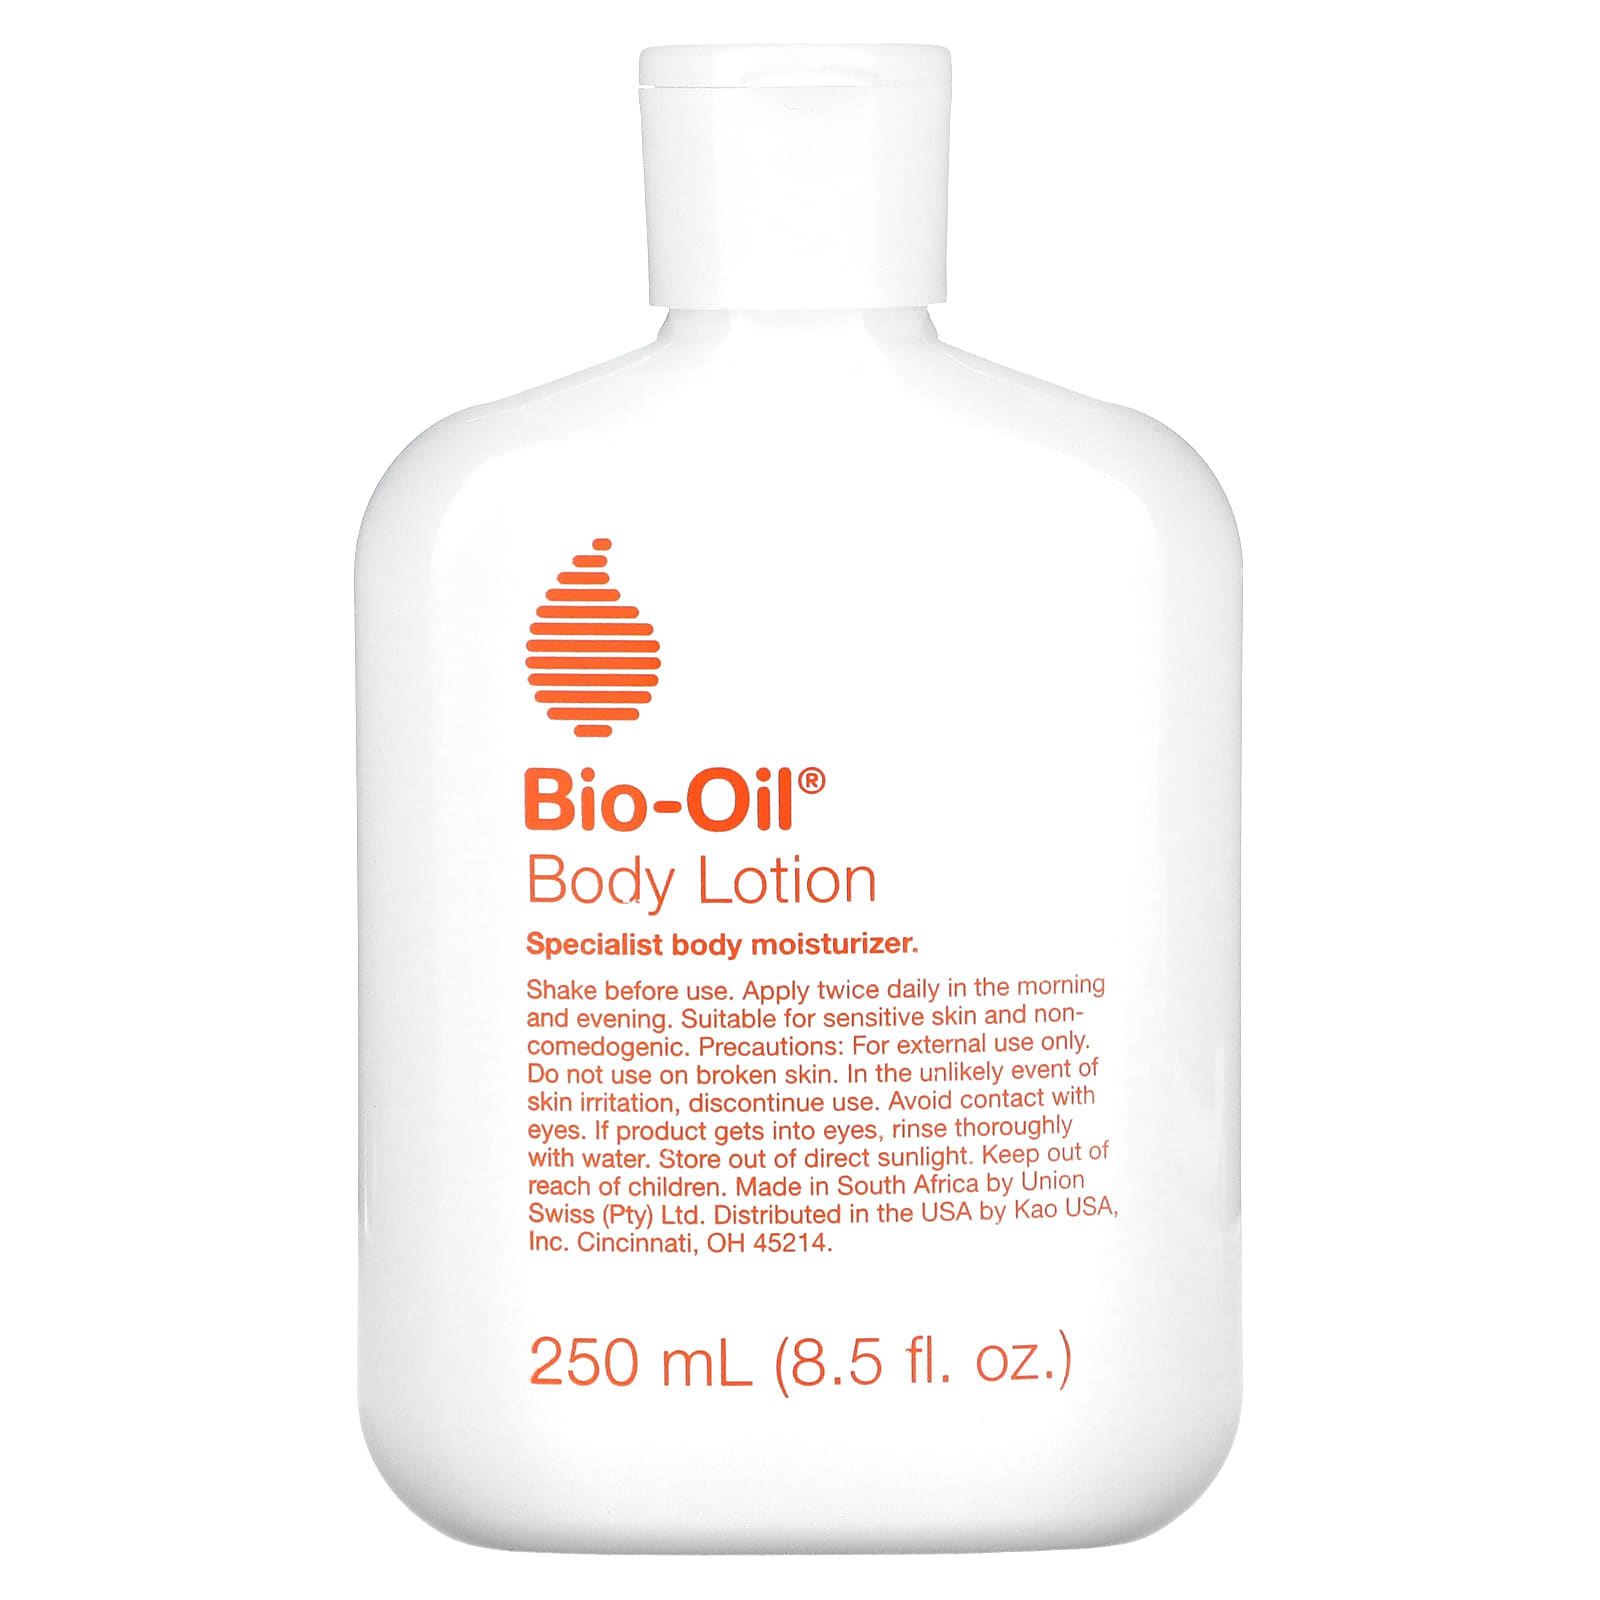 Лосьон Bio-Oil для тела, 250 мл